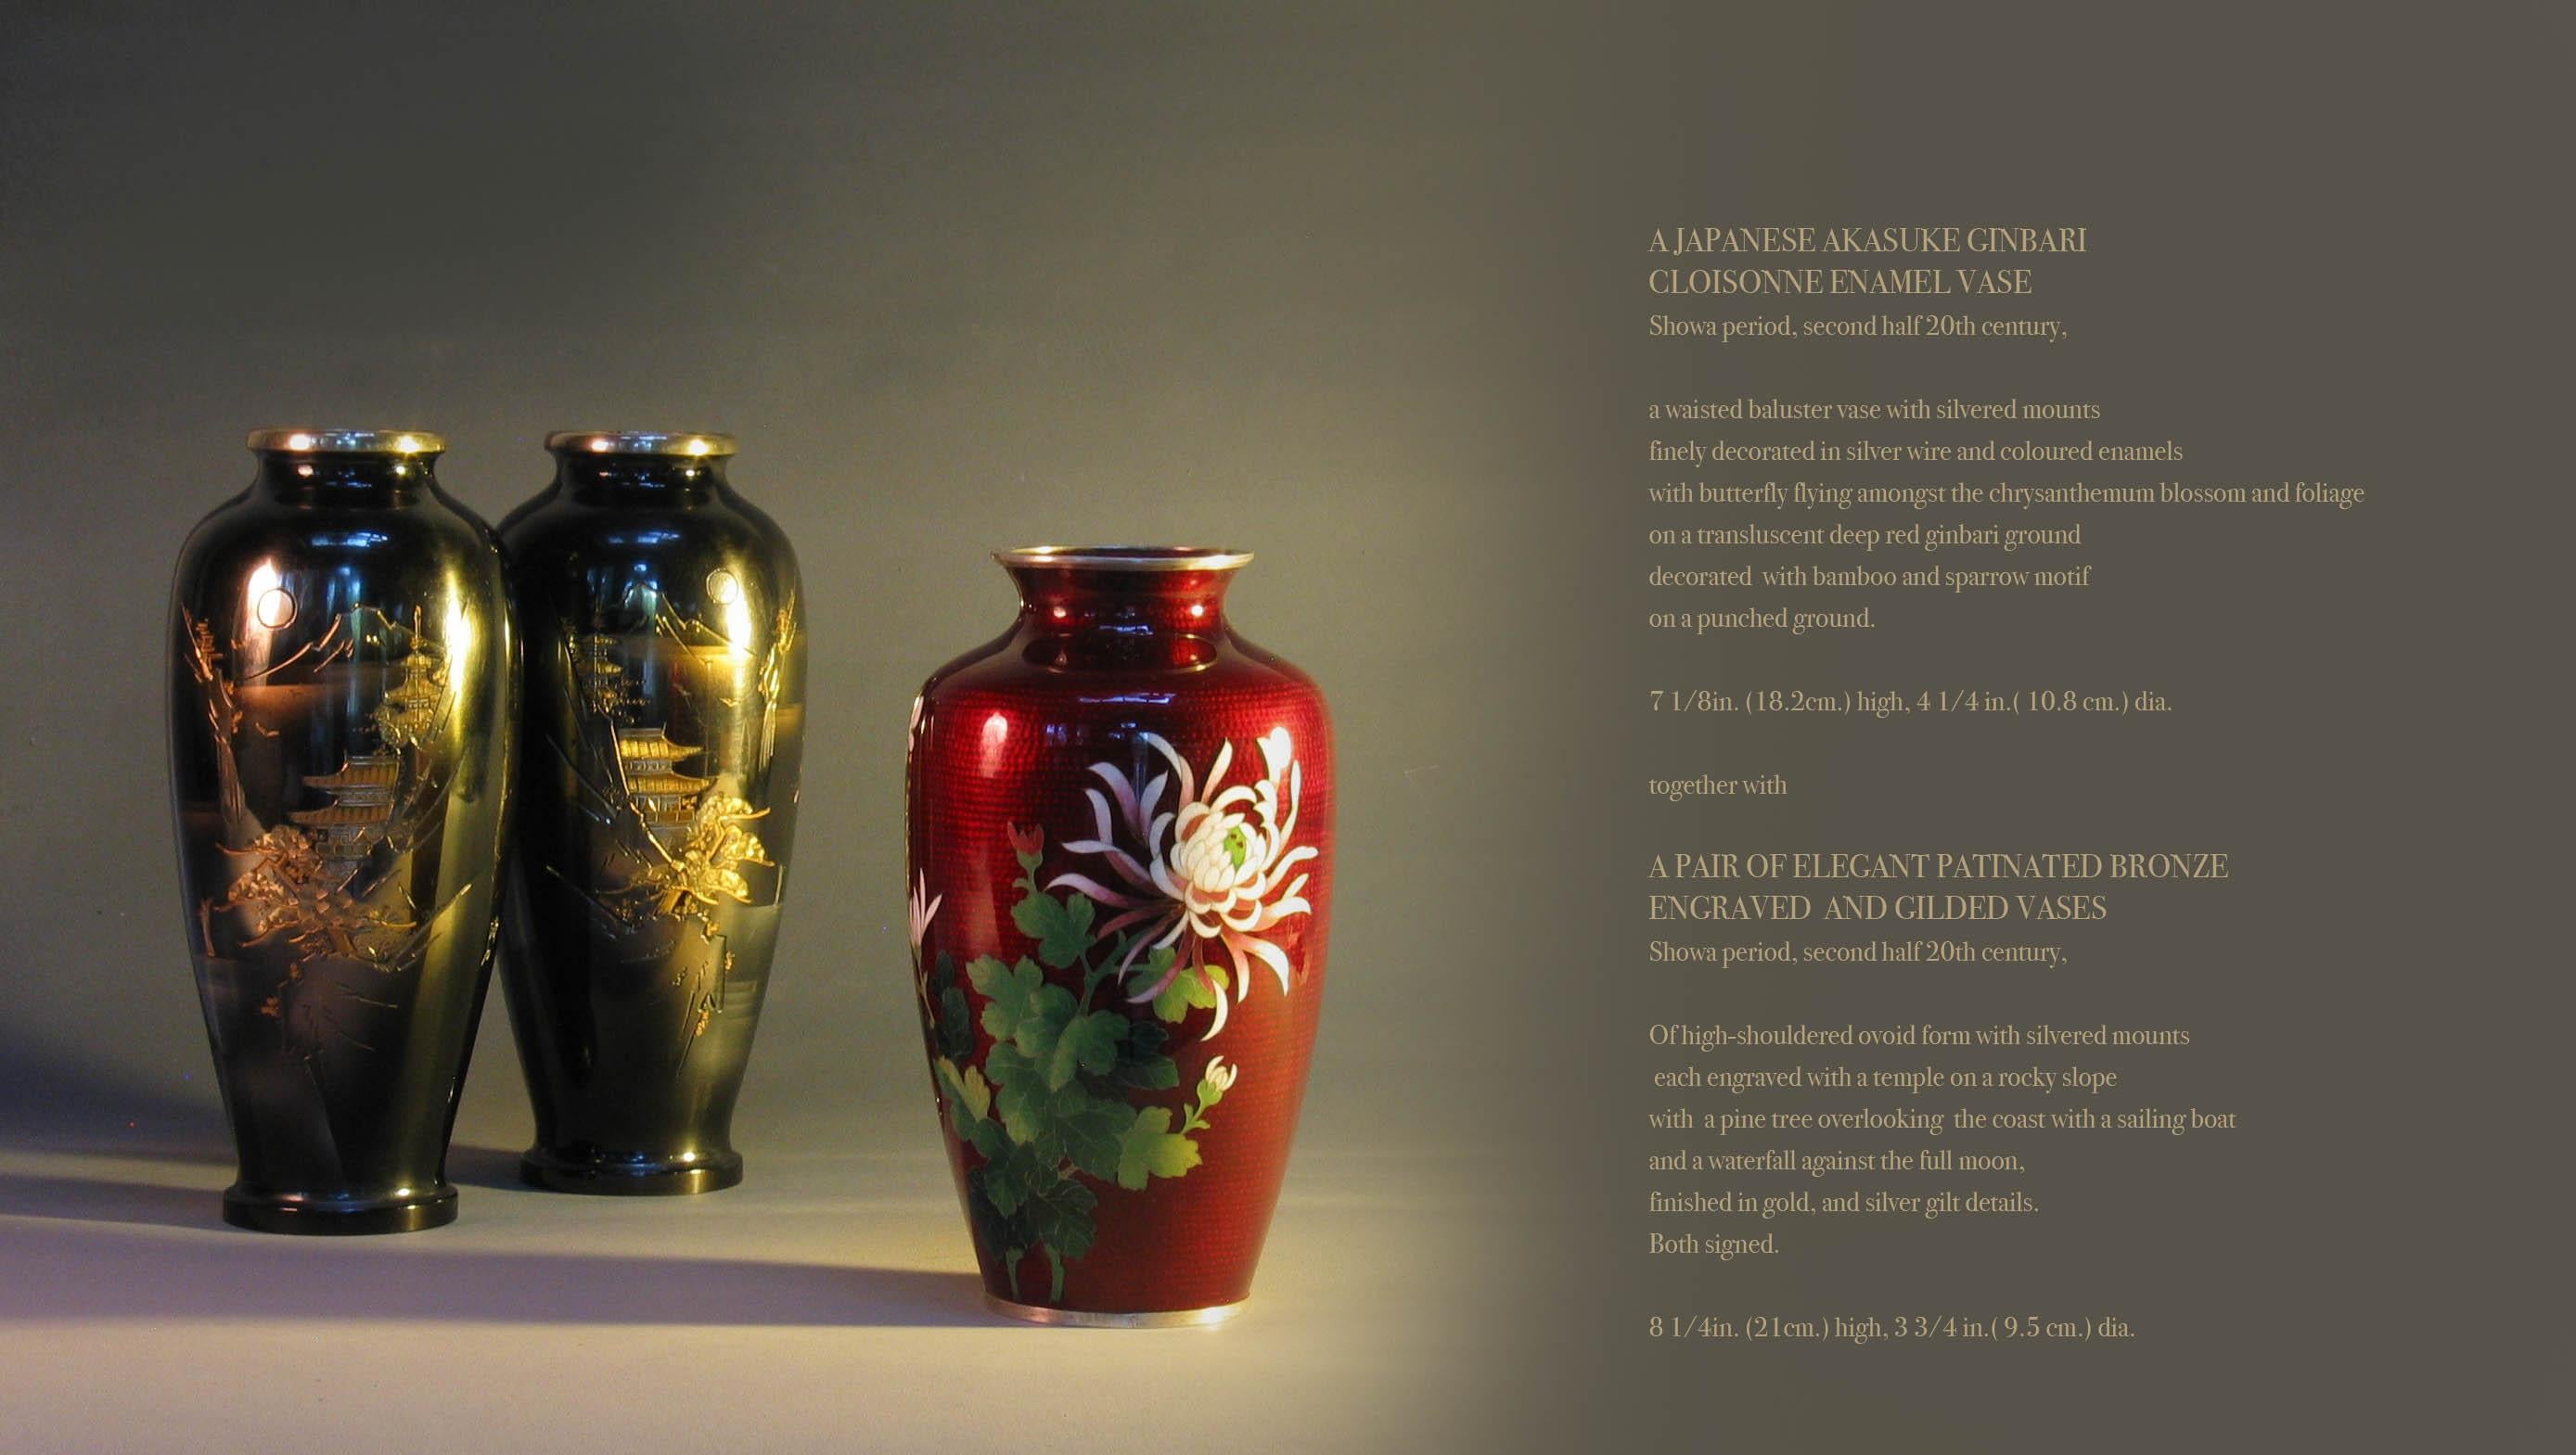 Japanische Ginbari-Cloisonne-Emaille-Vase Plus
Ein Paar aus patinierter Bronze
Gravierte und vergoldete Vasen

Ein japanischer Akasuke Ginbari
Cloisonne-Emaille-Vase
Showa-Periode, zweite Hälfte des 20. Jahrhunderts, 
eine taillierte